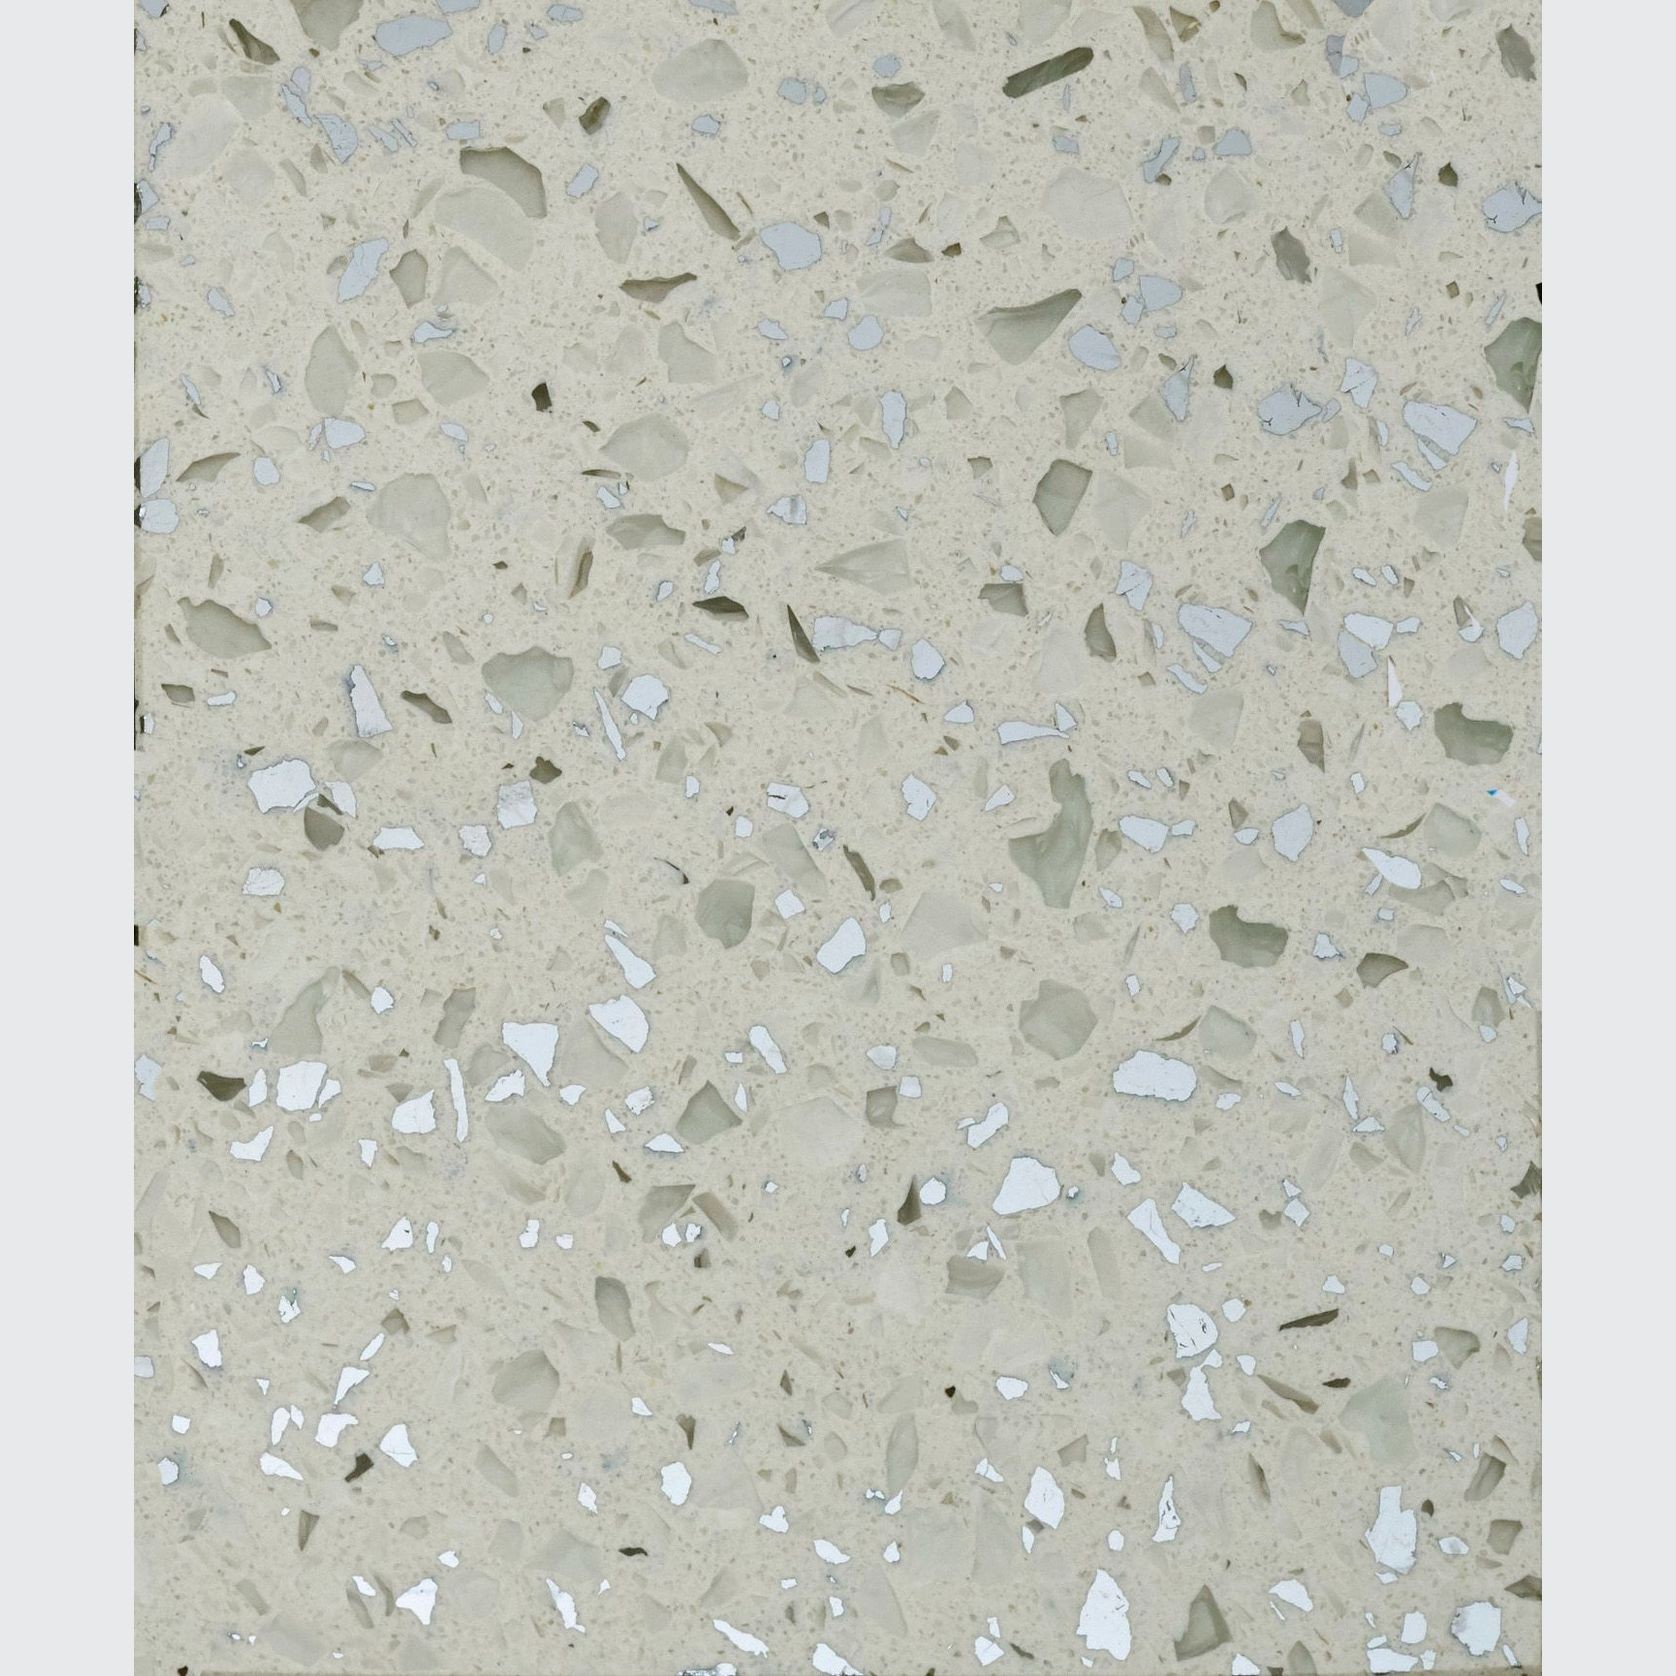 Platinum White - UniQuartz Polished Engineered Stone gallery detail image